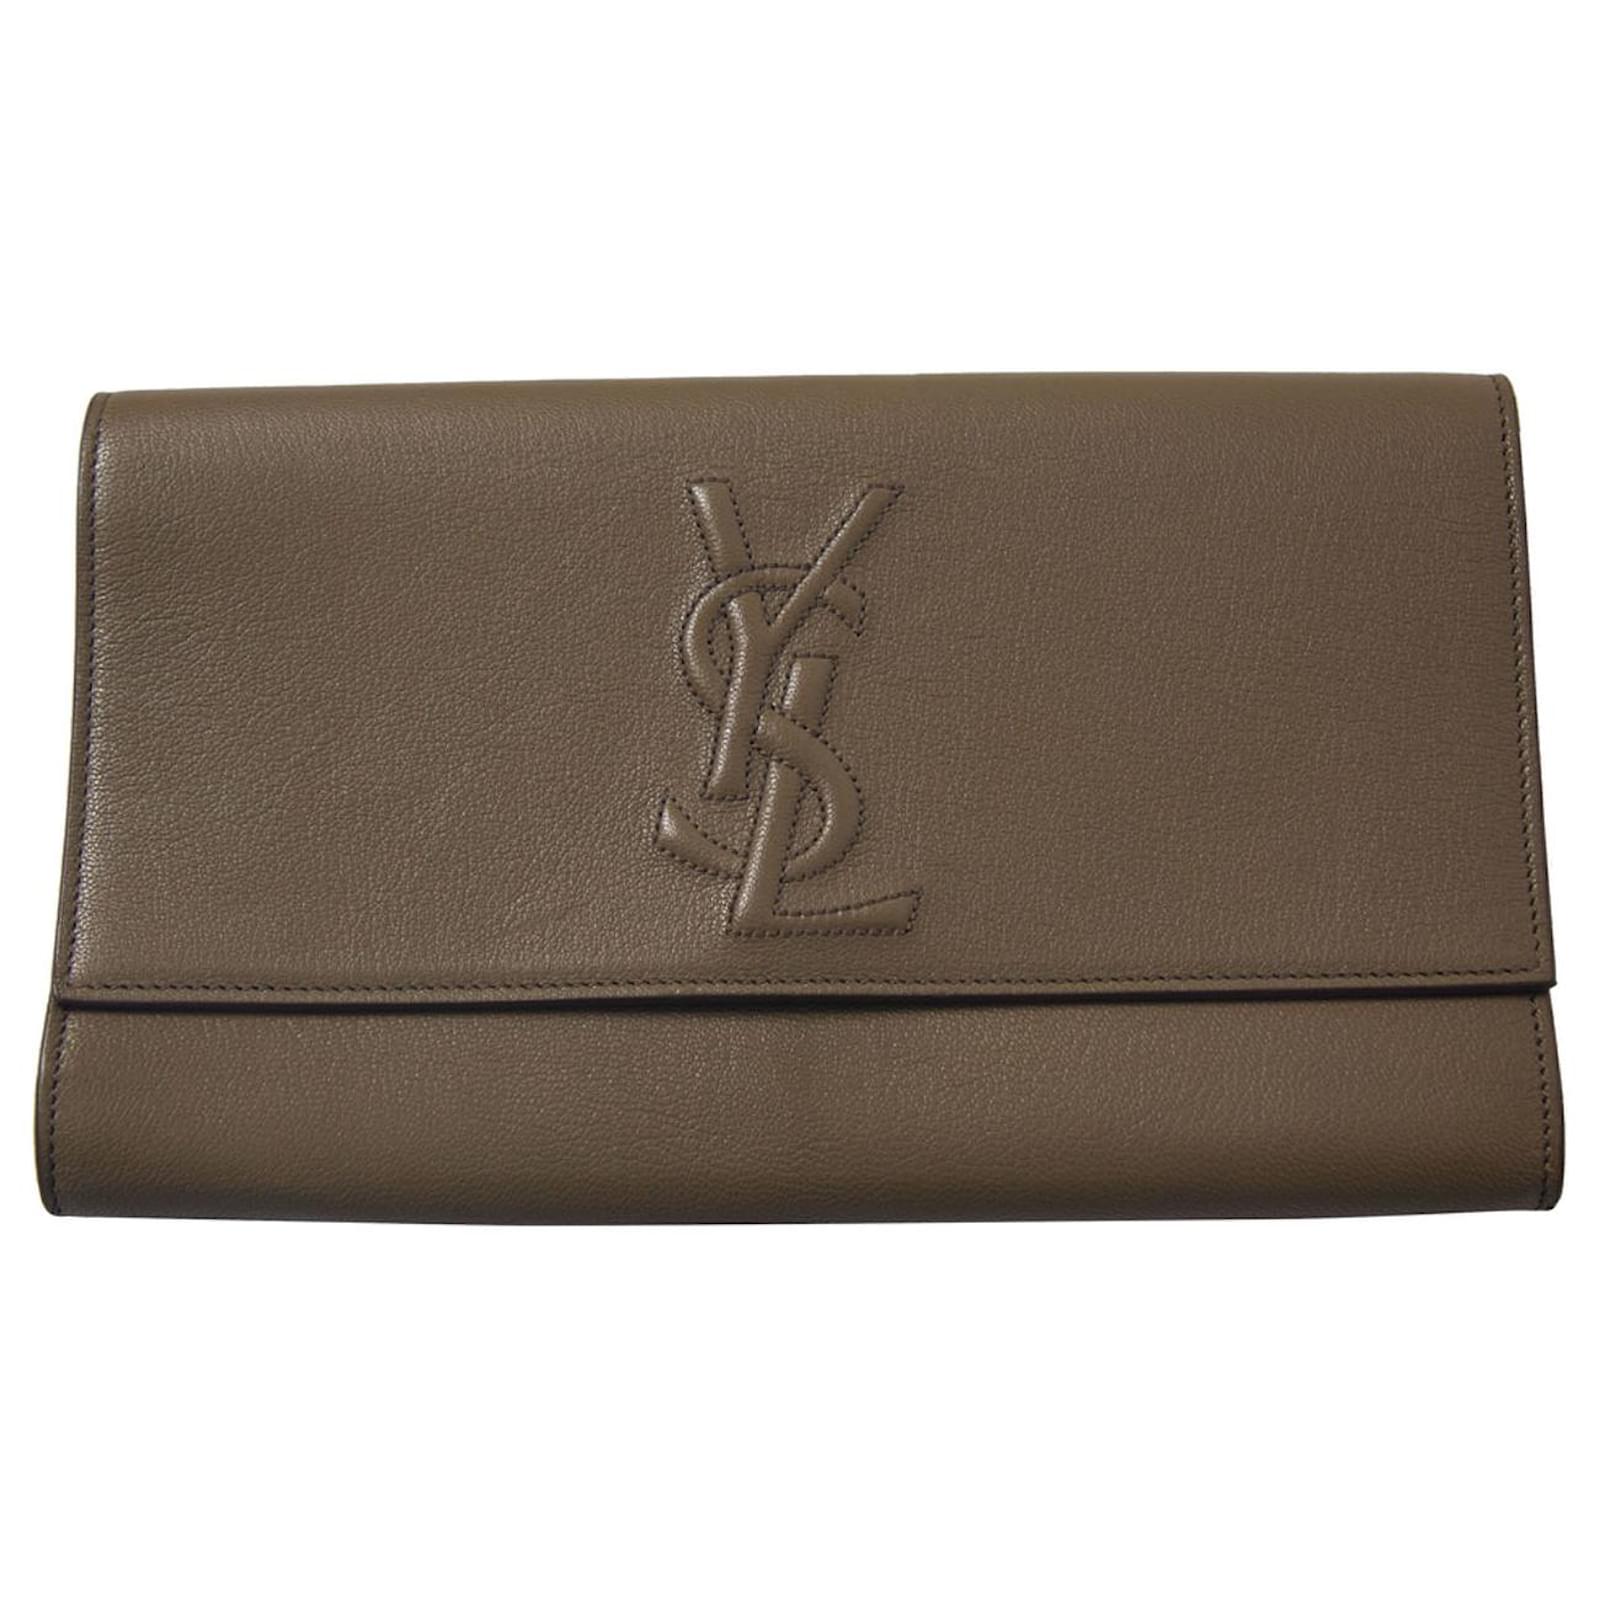 Yves Saint Laurent Belle De Jour Patent Leather Clutch Bag Beige